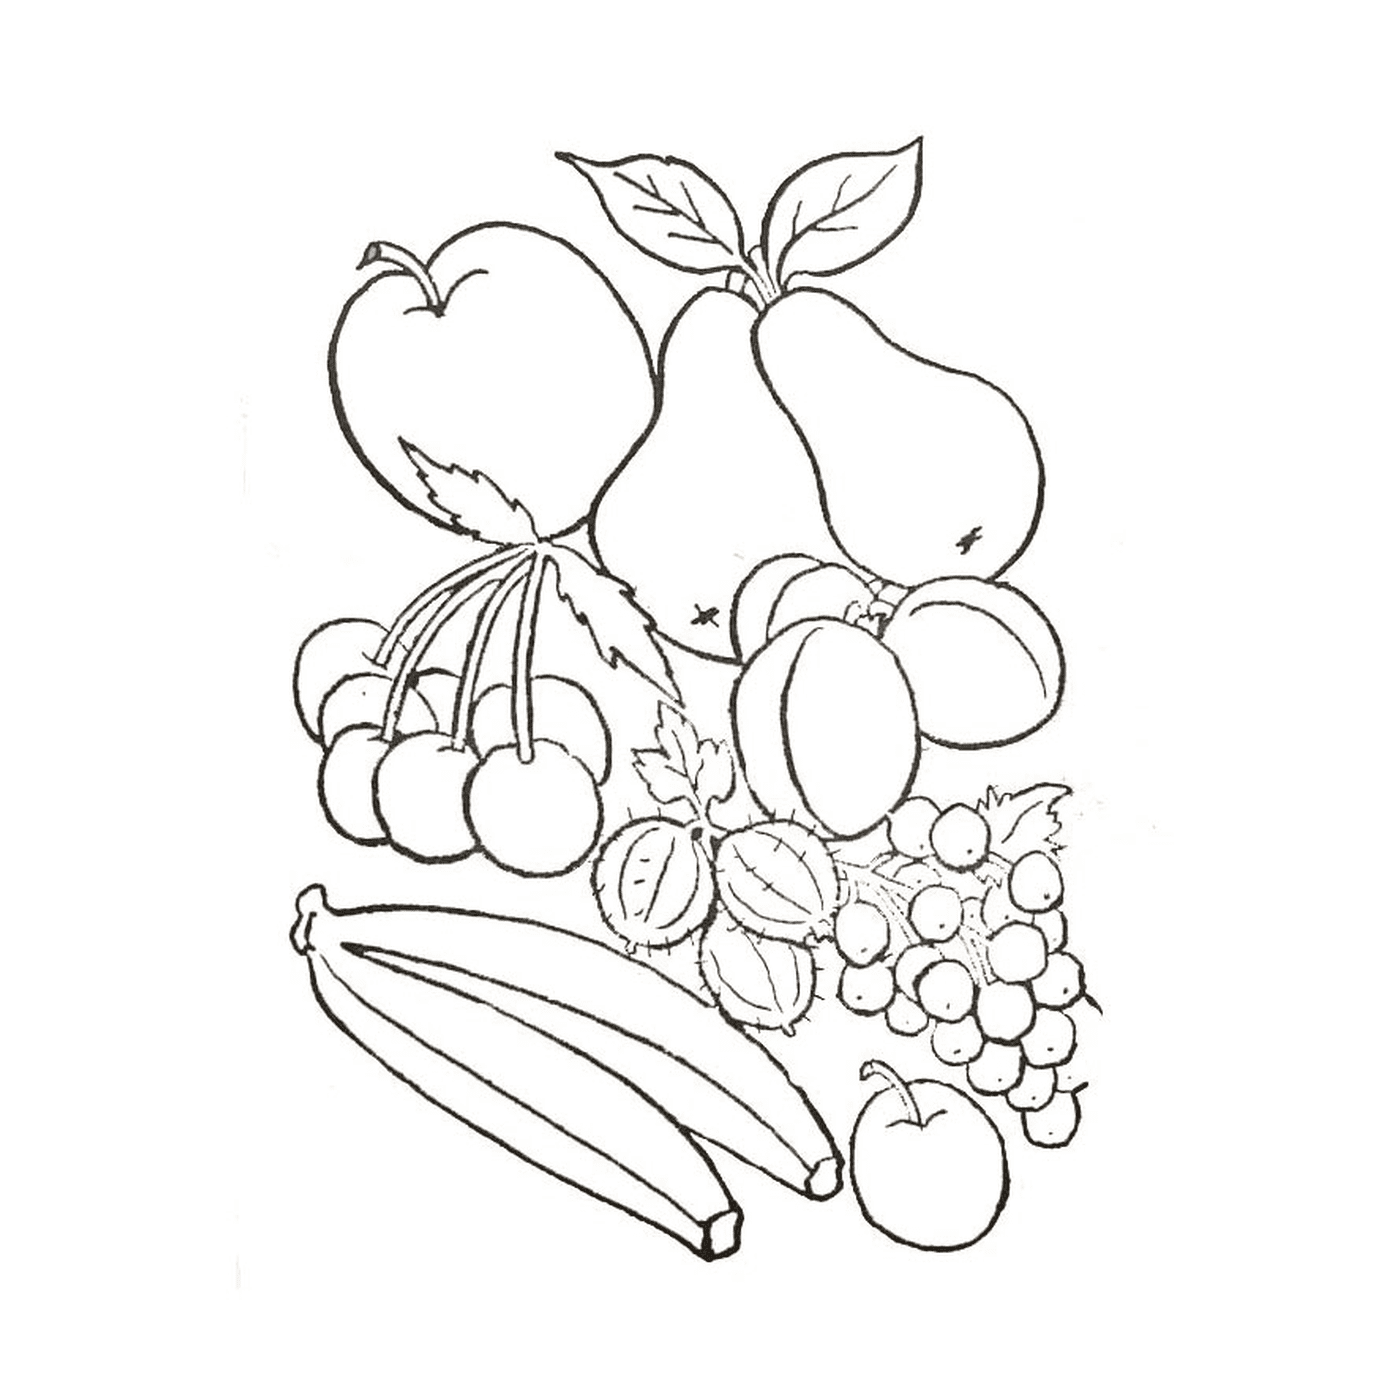 coloriage fruits et legumes d automne